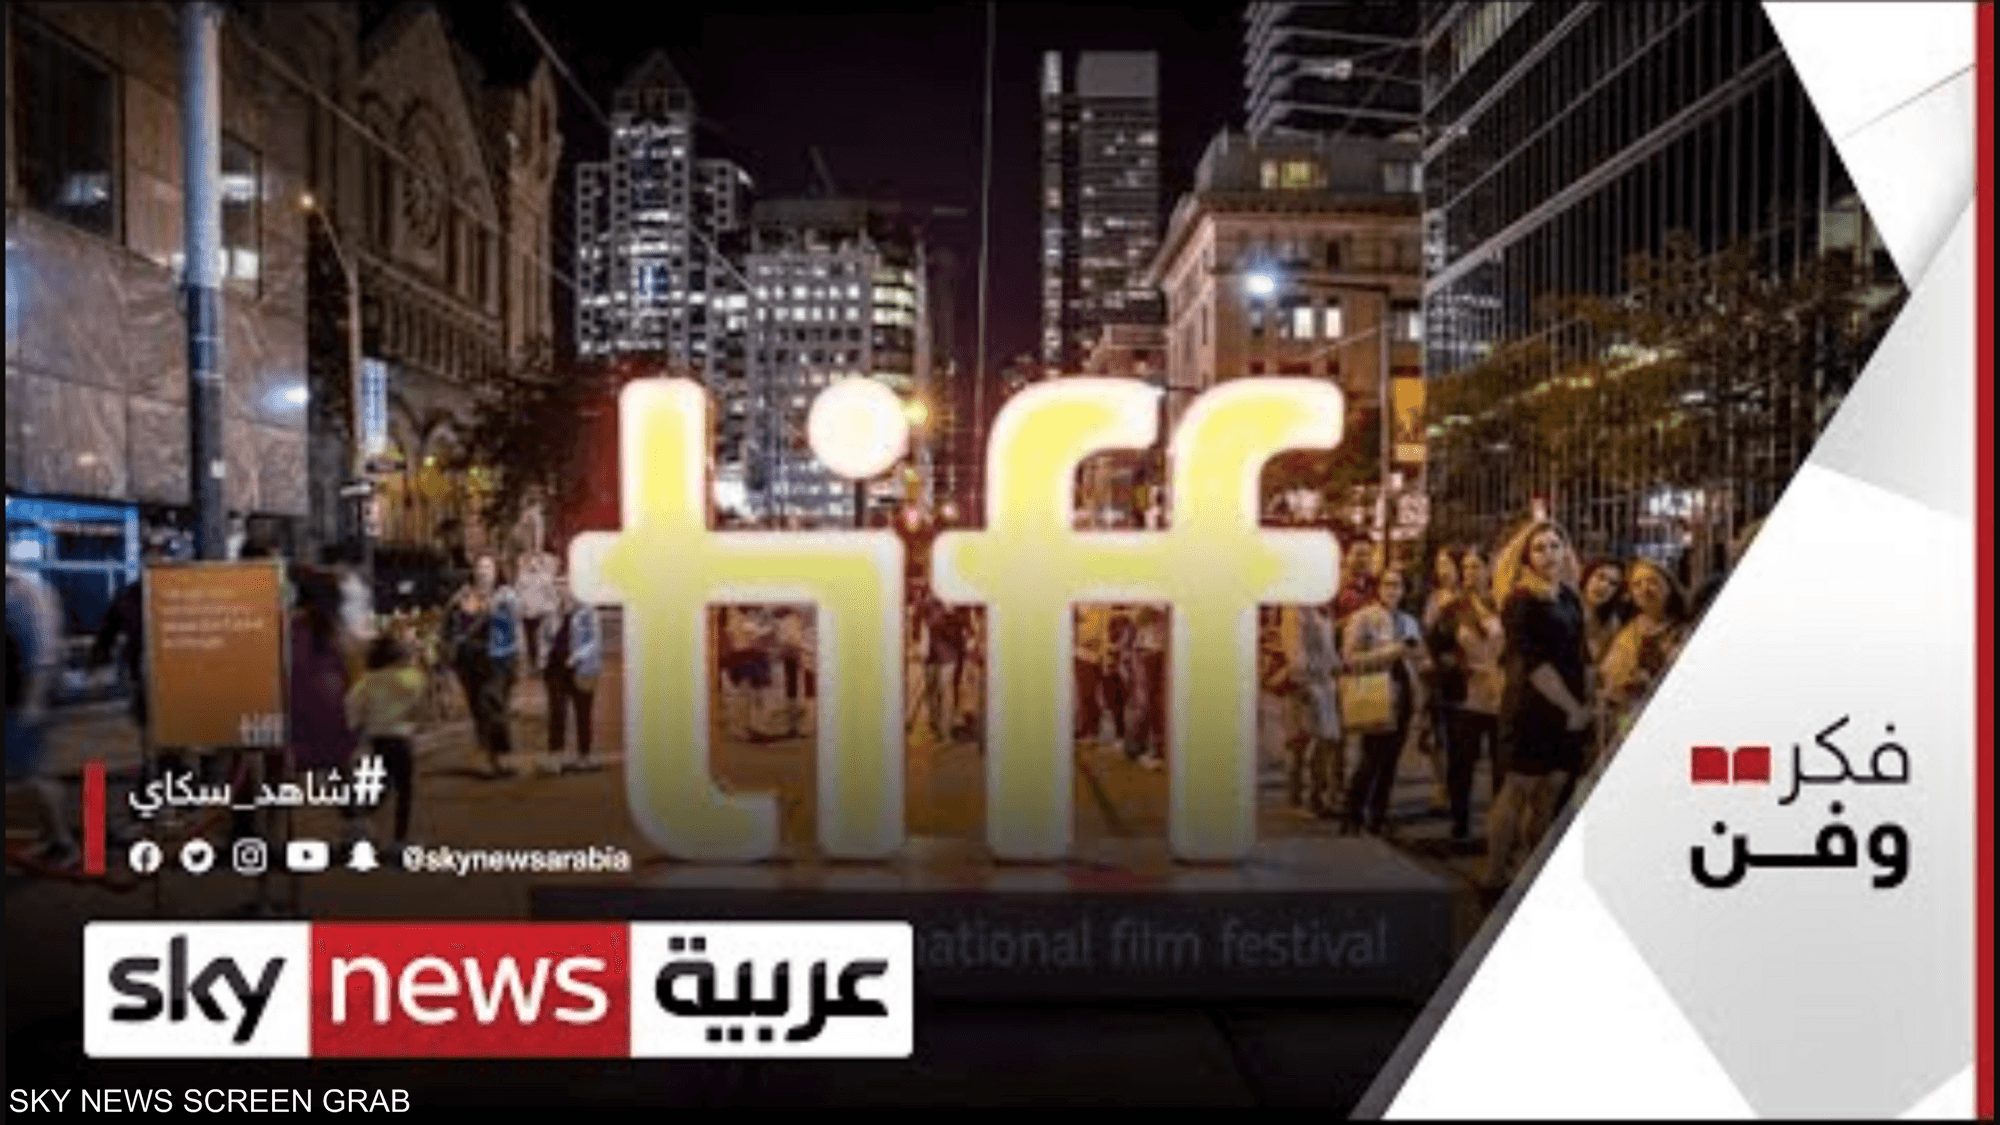 افتتاح مهرجان تورونتو بالفيلم العربي "السباحتان"